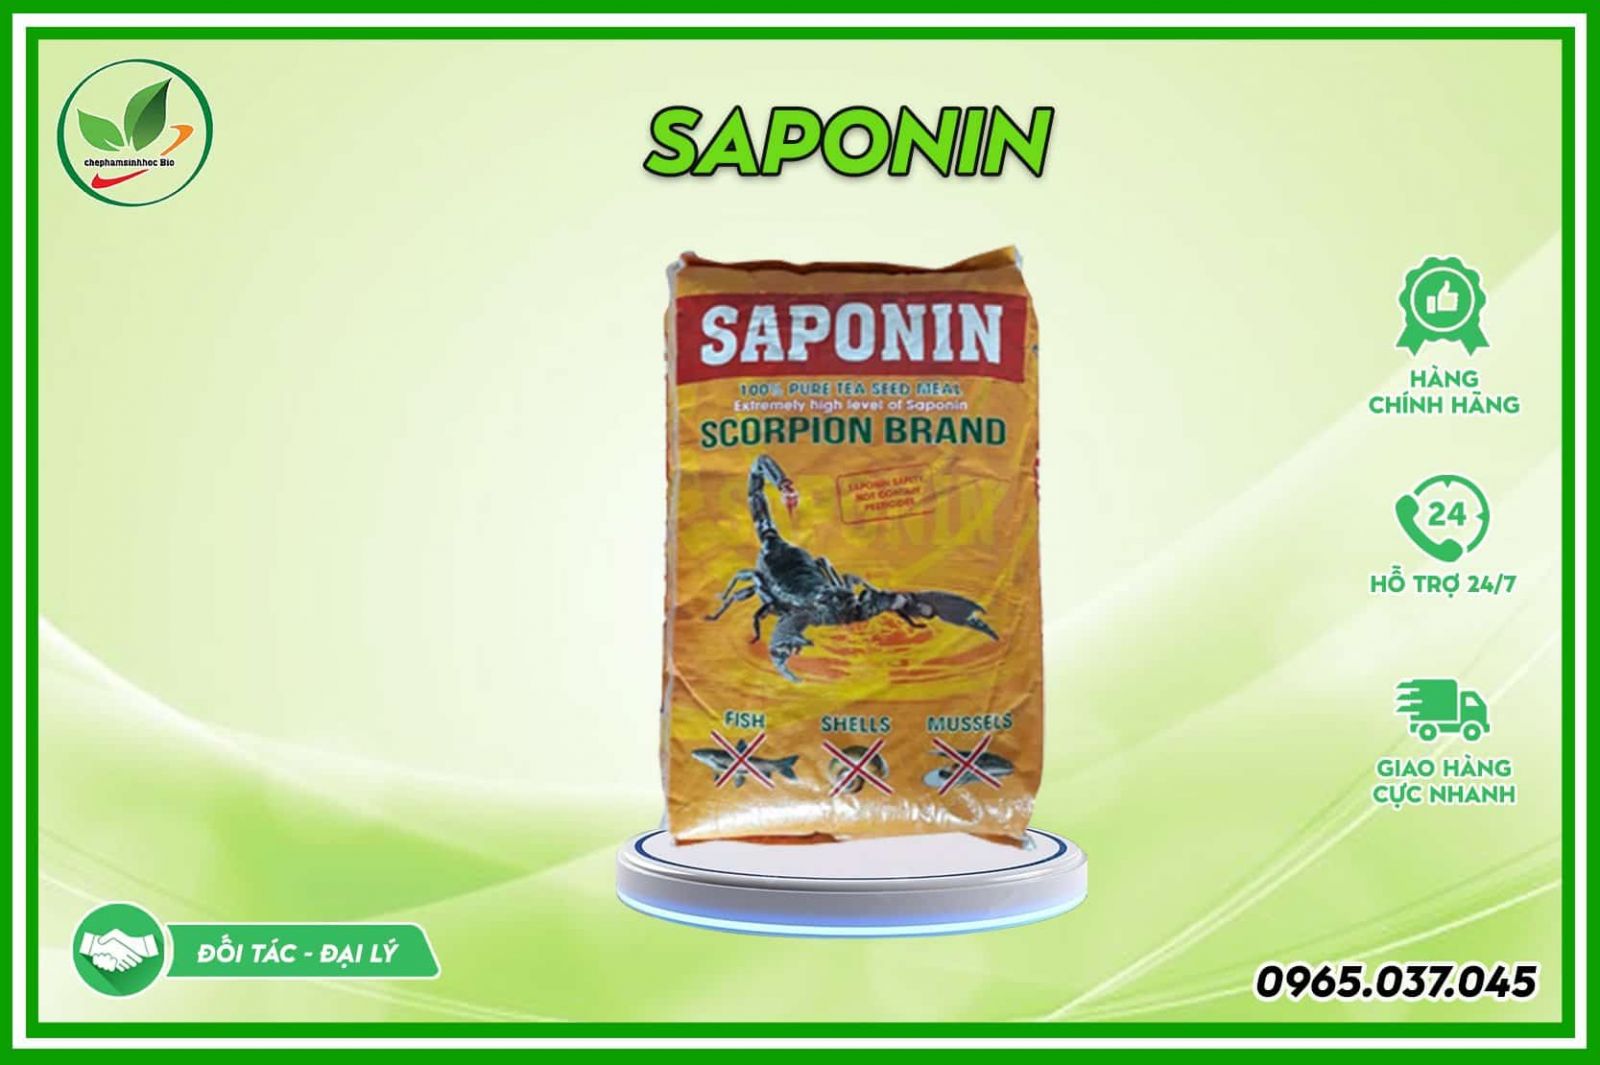 Giới thiệu chung về thuốc diệt cá tạp Saponin